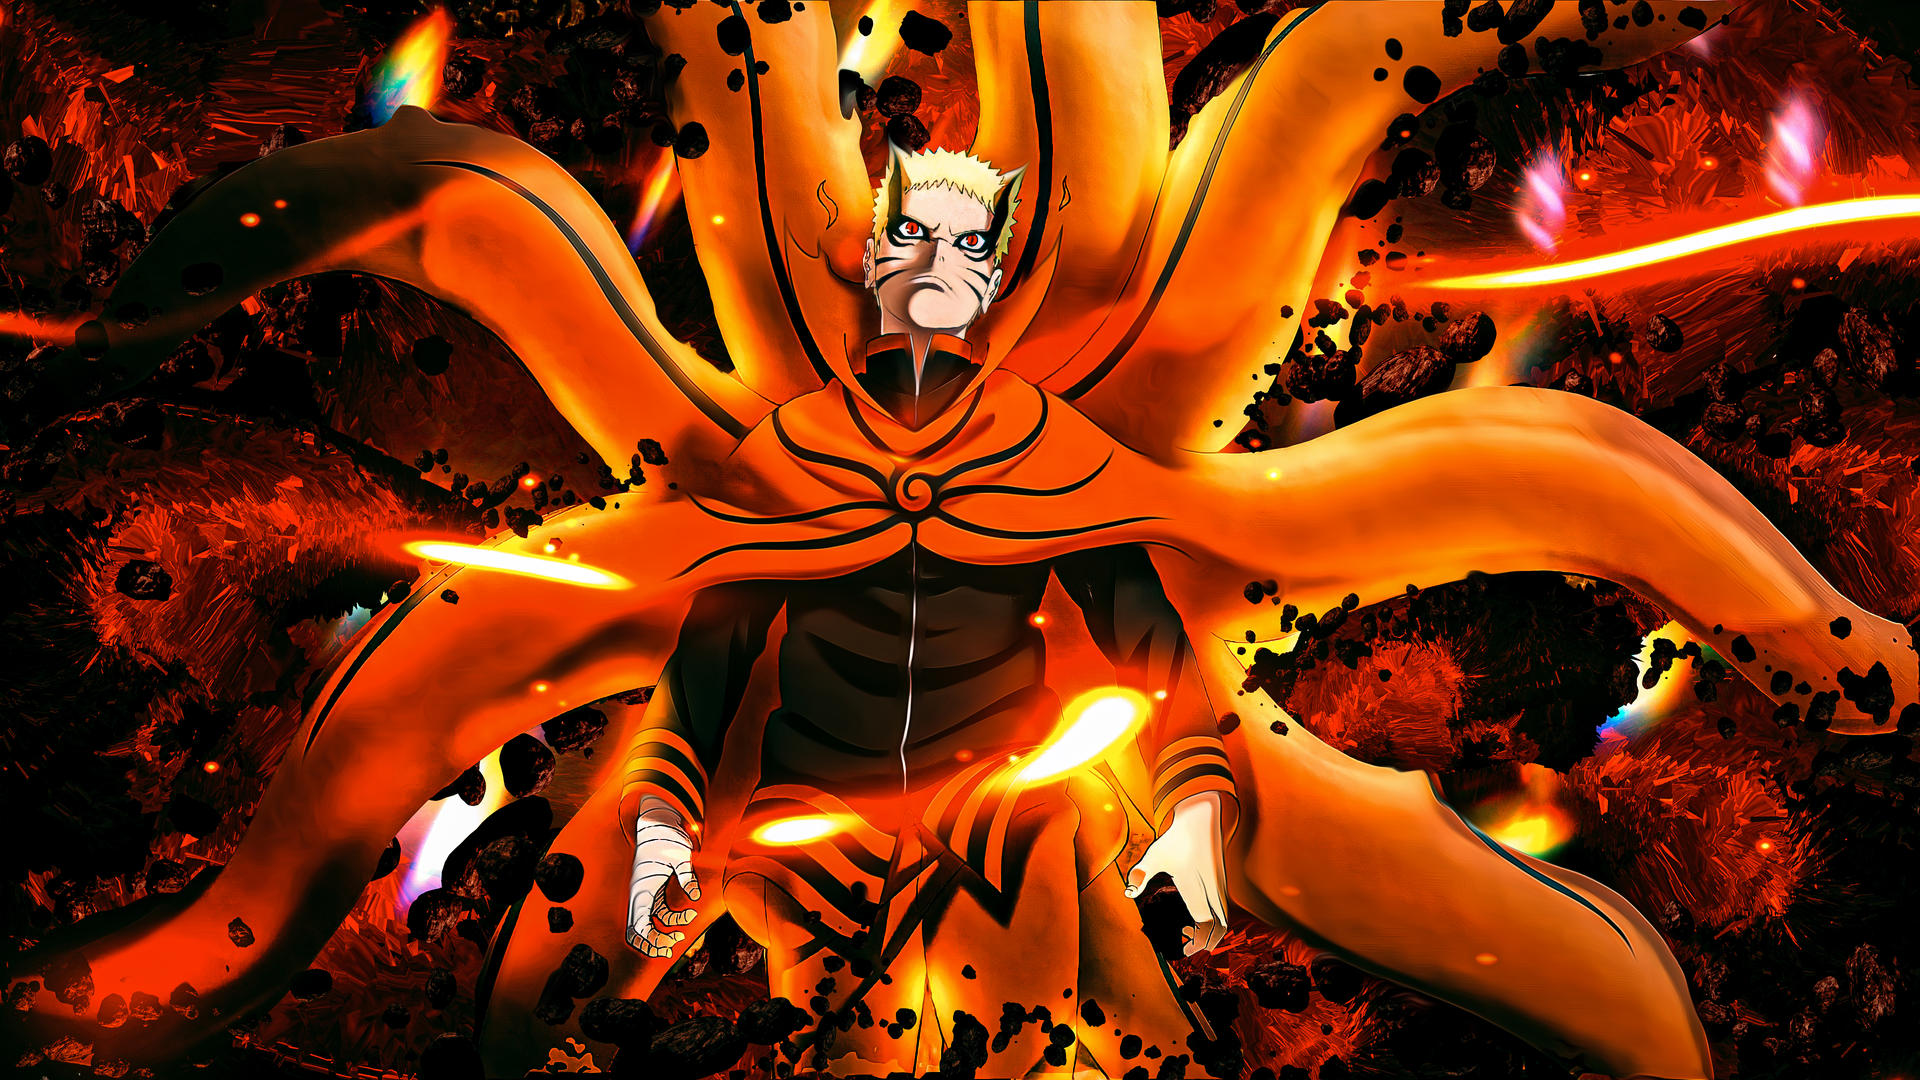 Bayron Mode là một trong những chế độ chiến đấu của Naruto được yêu thích nhất. Hãy chiêm ngưỡng những bức ảnh Bayron Mode Wallpaper chất lượng cao để cảm nhận được sức mạnh và tinh thần chiến đấu của Naruto trở thành một nữa của Tử thần.